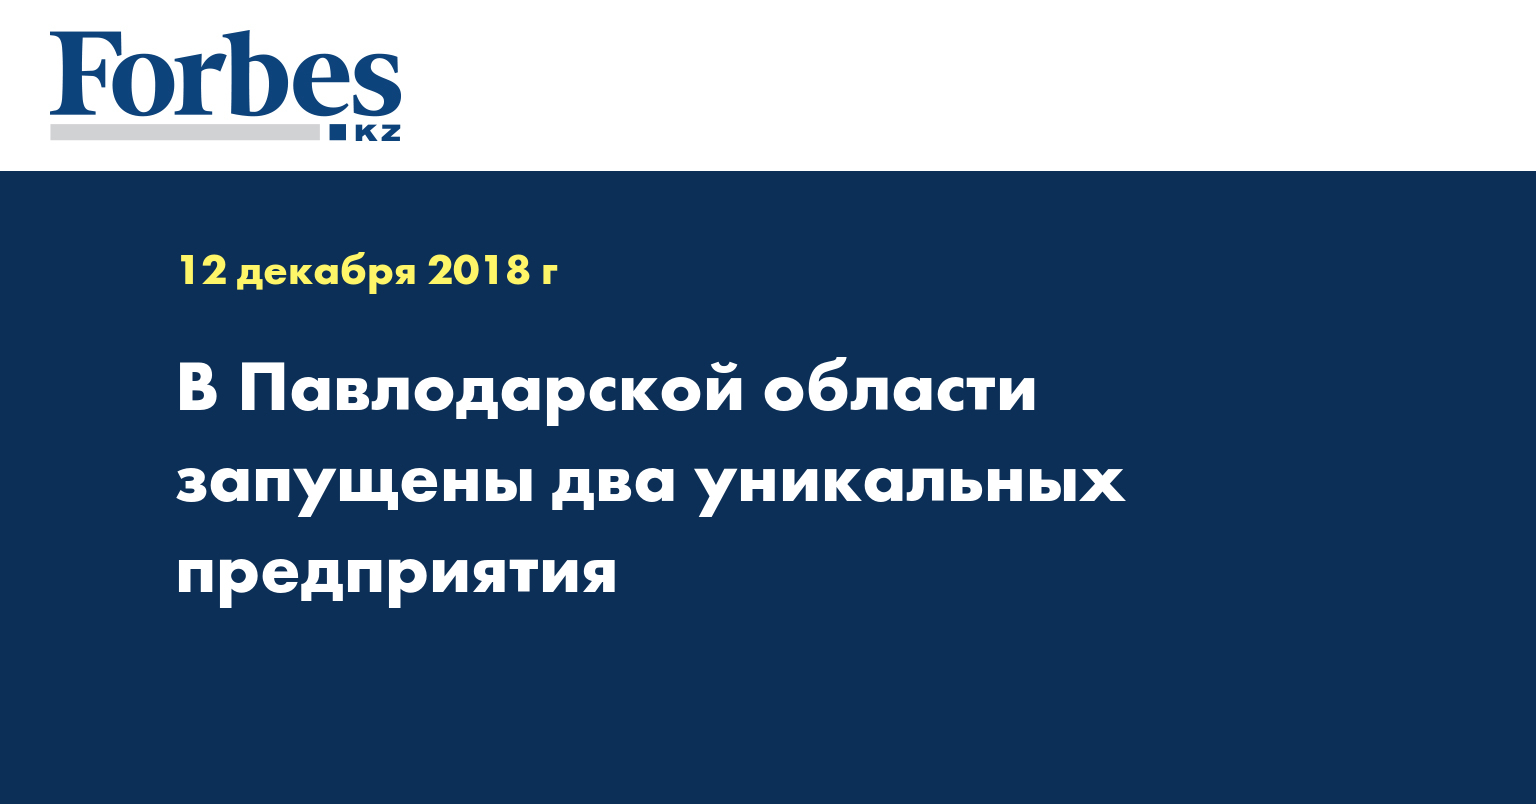 В Павлодарской области запущены два уникальных предприятия